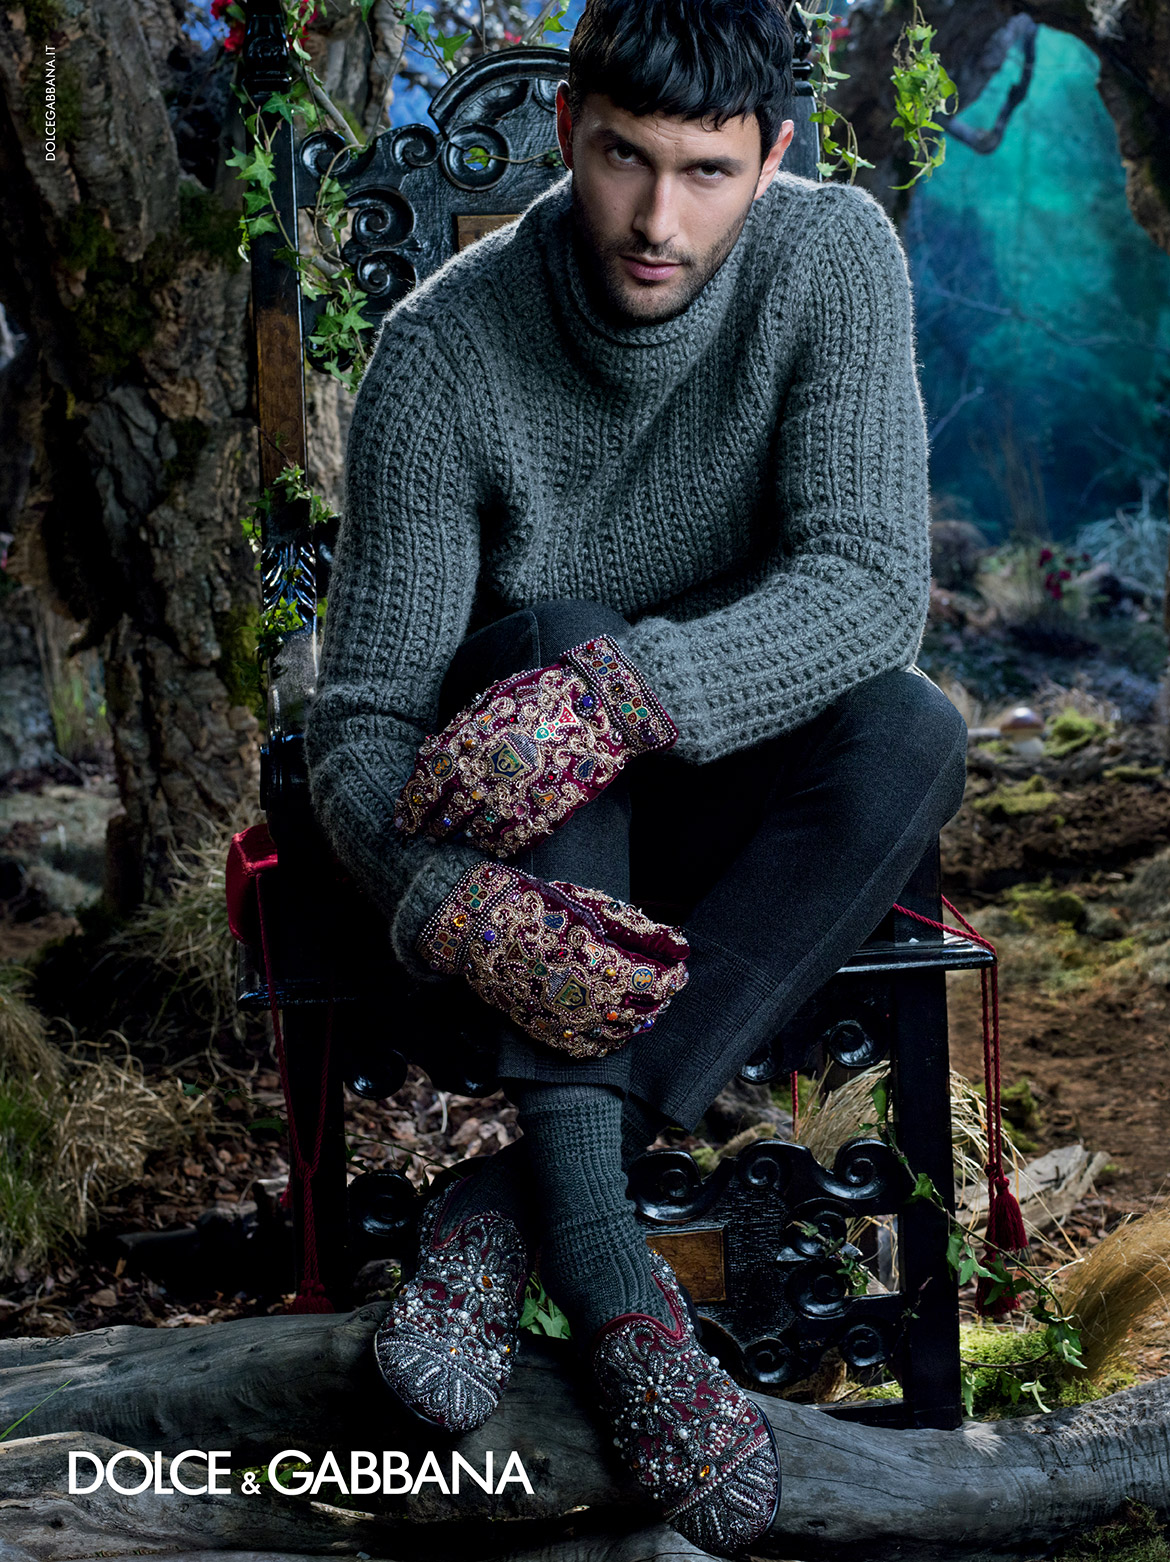 Dolce-Gabbana-Fall-2014-Menswear-Campaign-Tom-Lorenzo-Site-TLO (1)